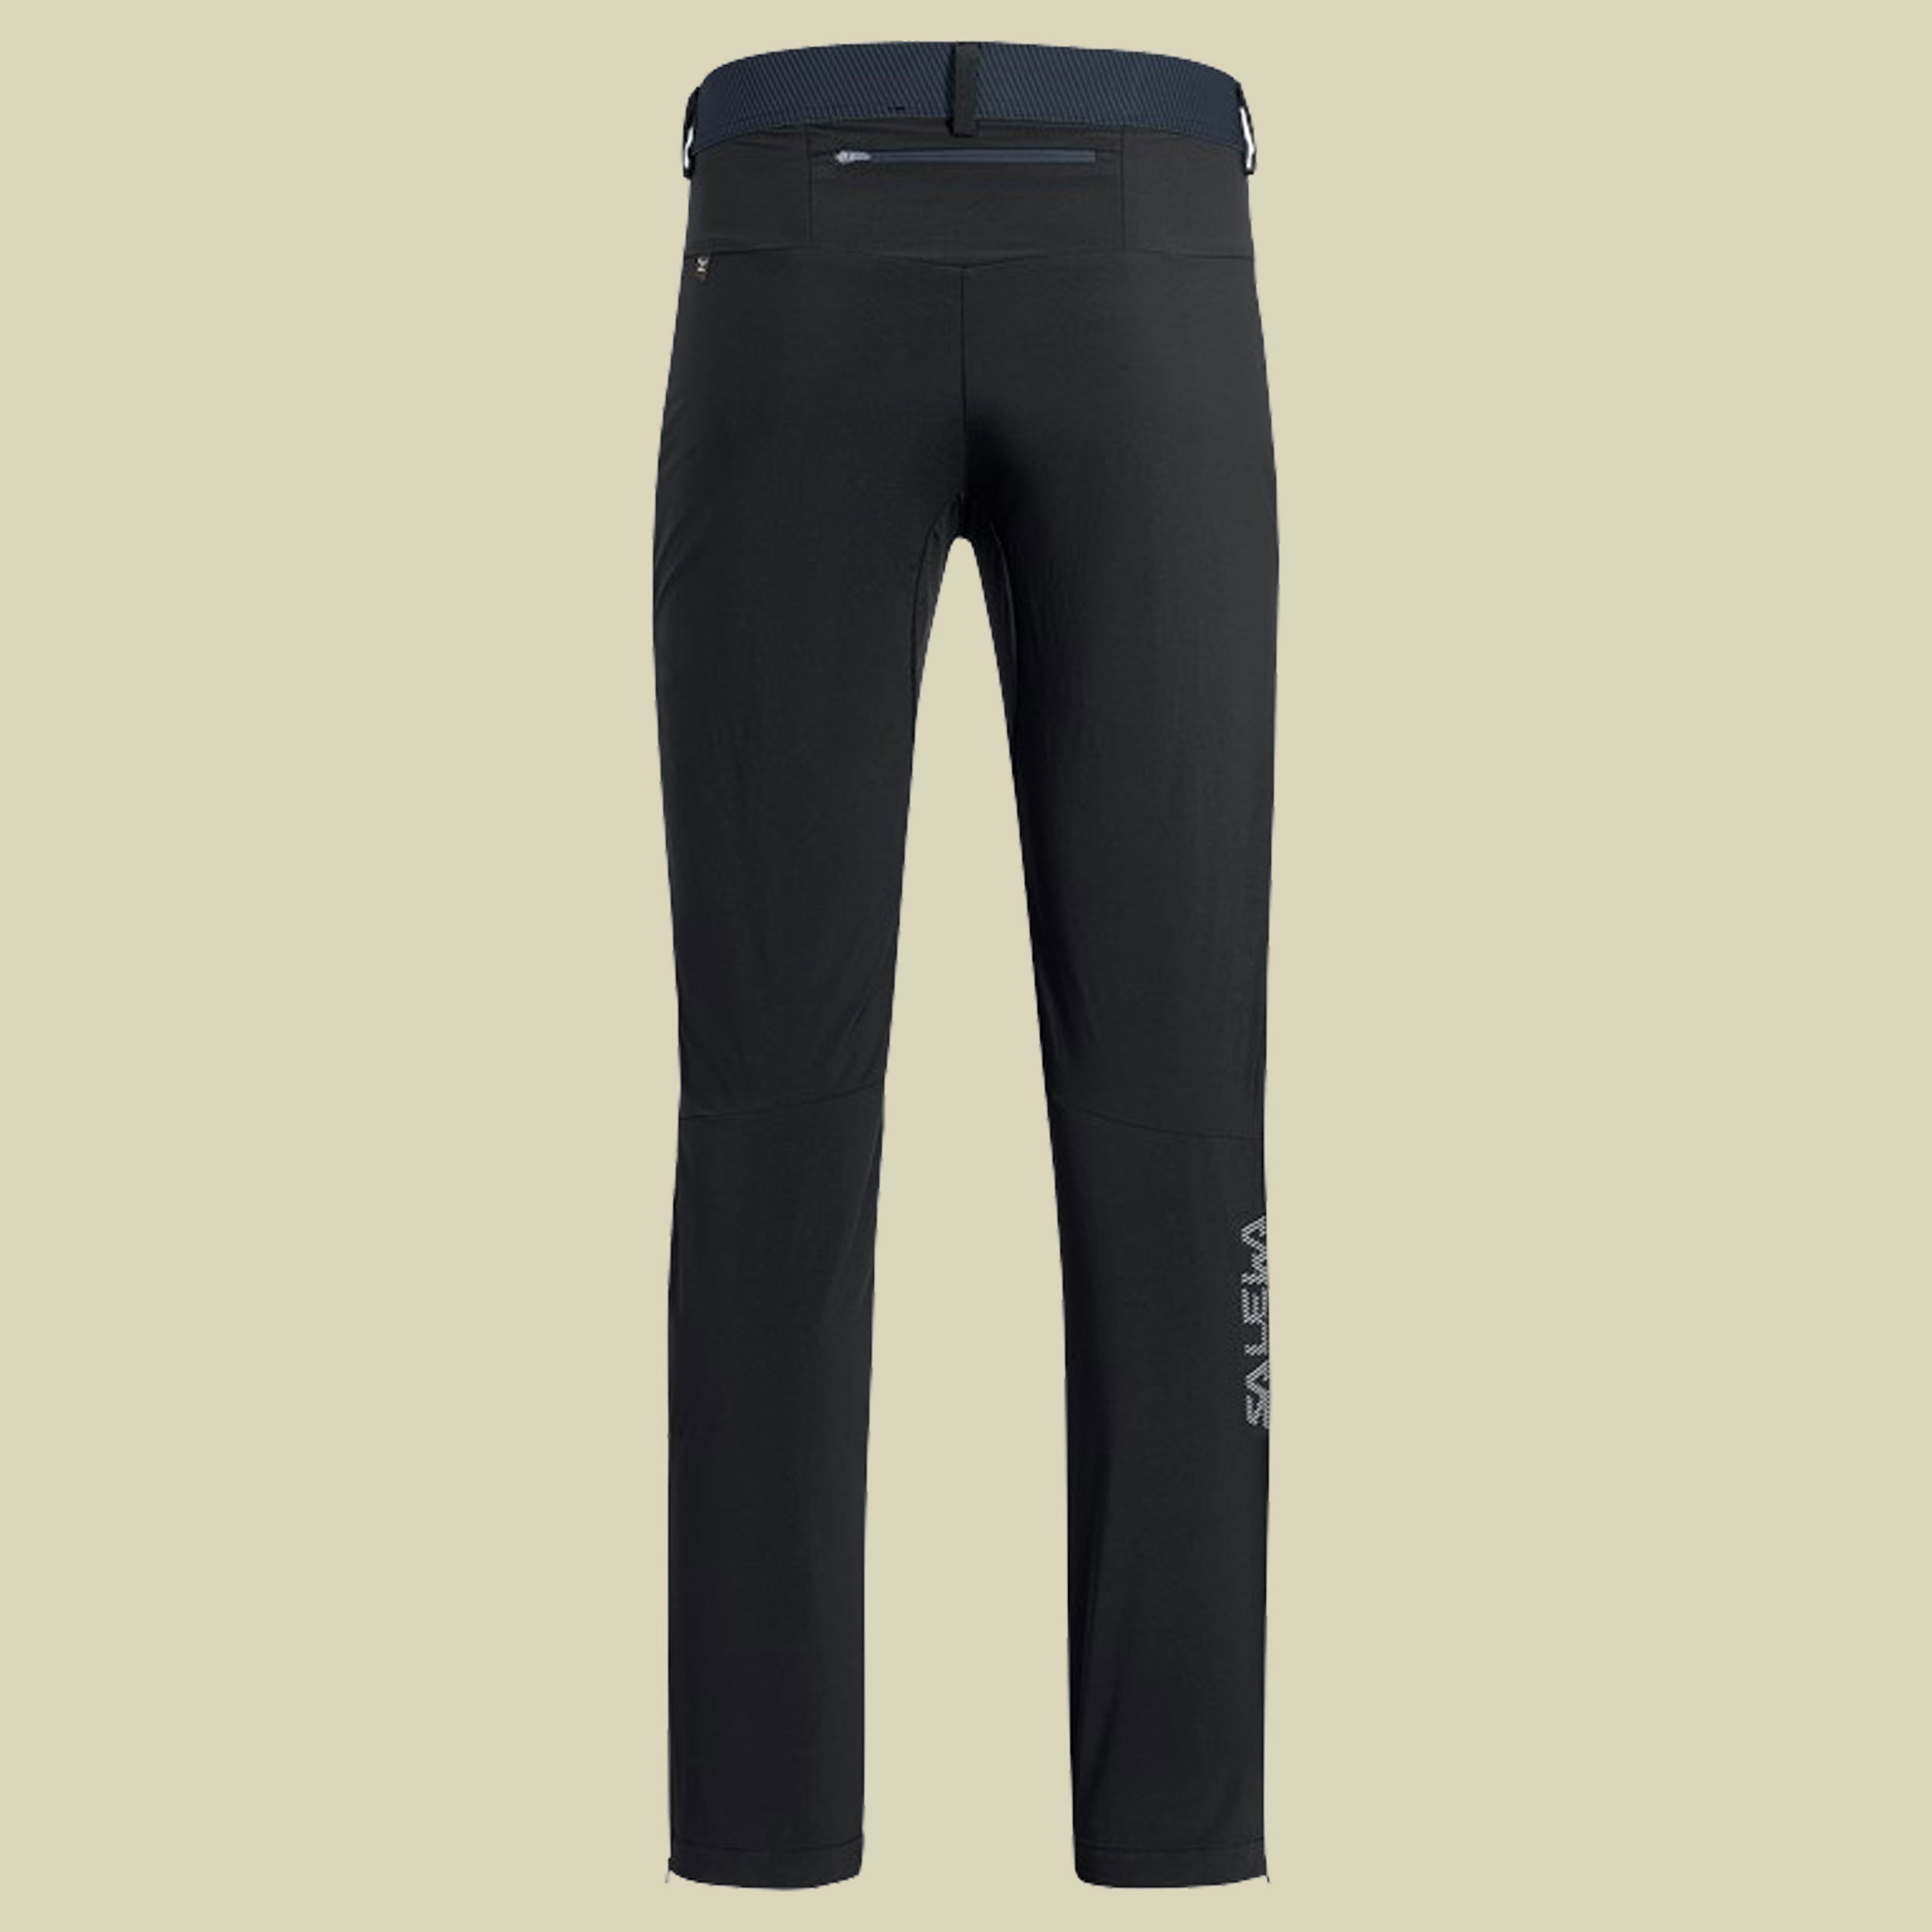 Pedroc 3 DST M Regular Pant Men Größe 52 (XL) Farbe black out/3860